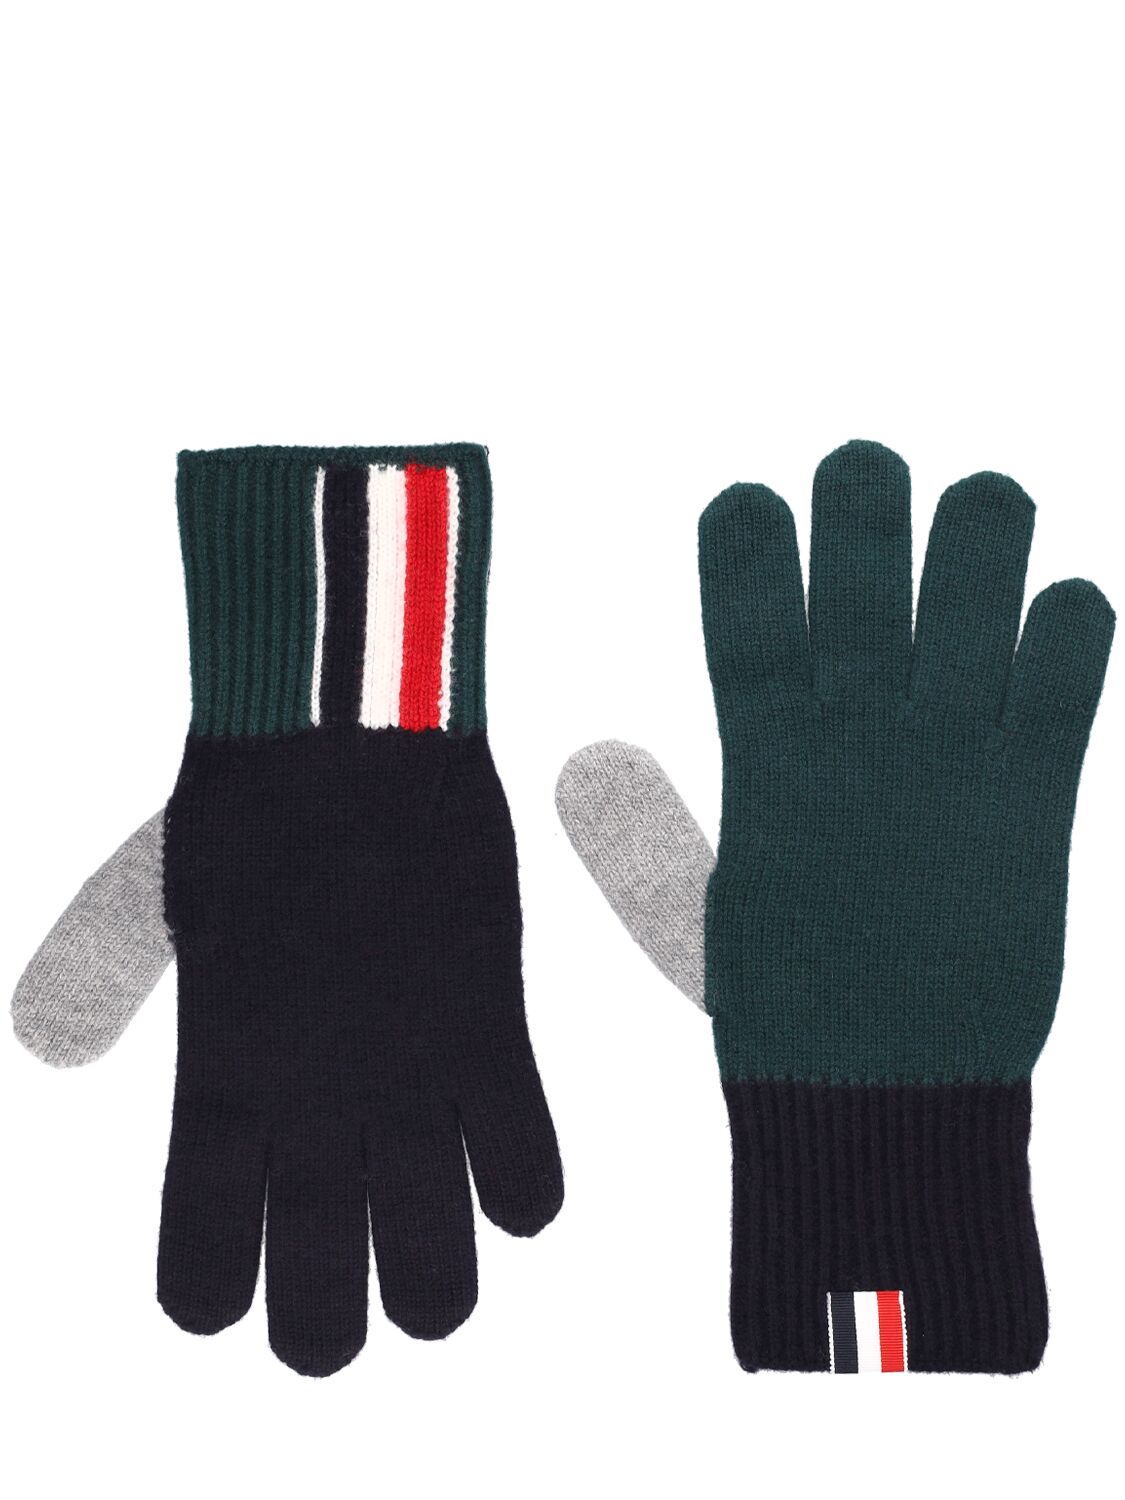 Image of Fun Mix Jersey Stitch Wool Gloves